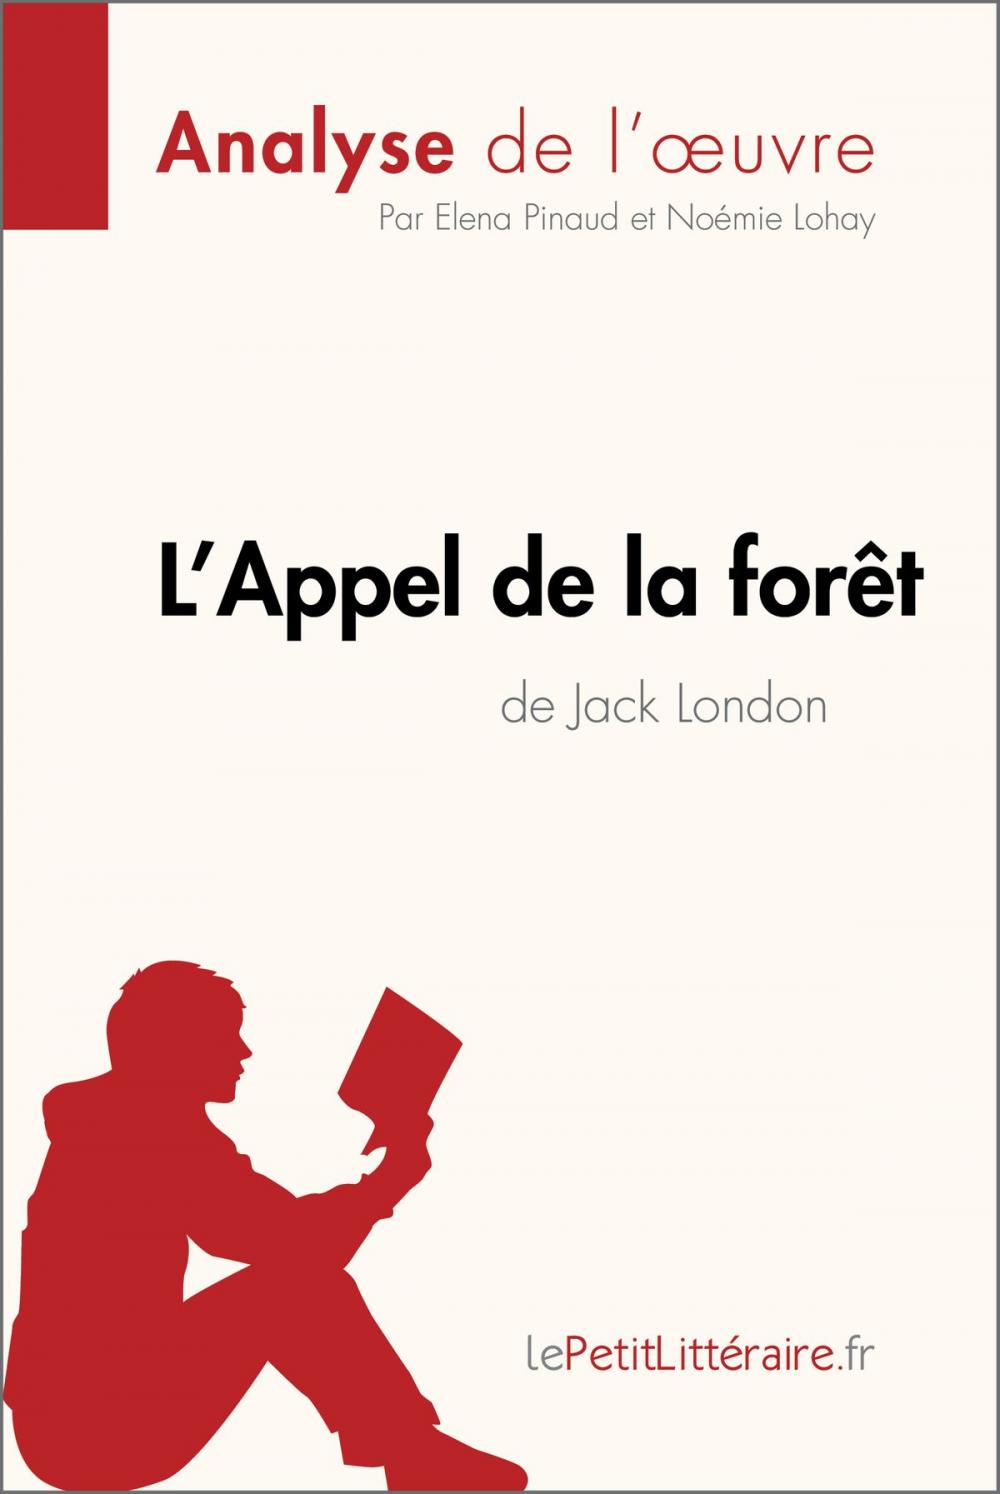 Big bigCover of L'Appel de la forêt de Jack London (Aanalyse de l'oeuvre)